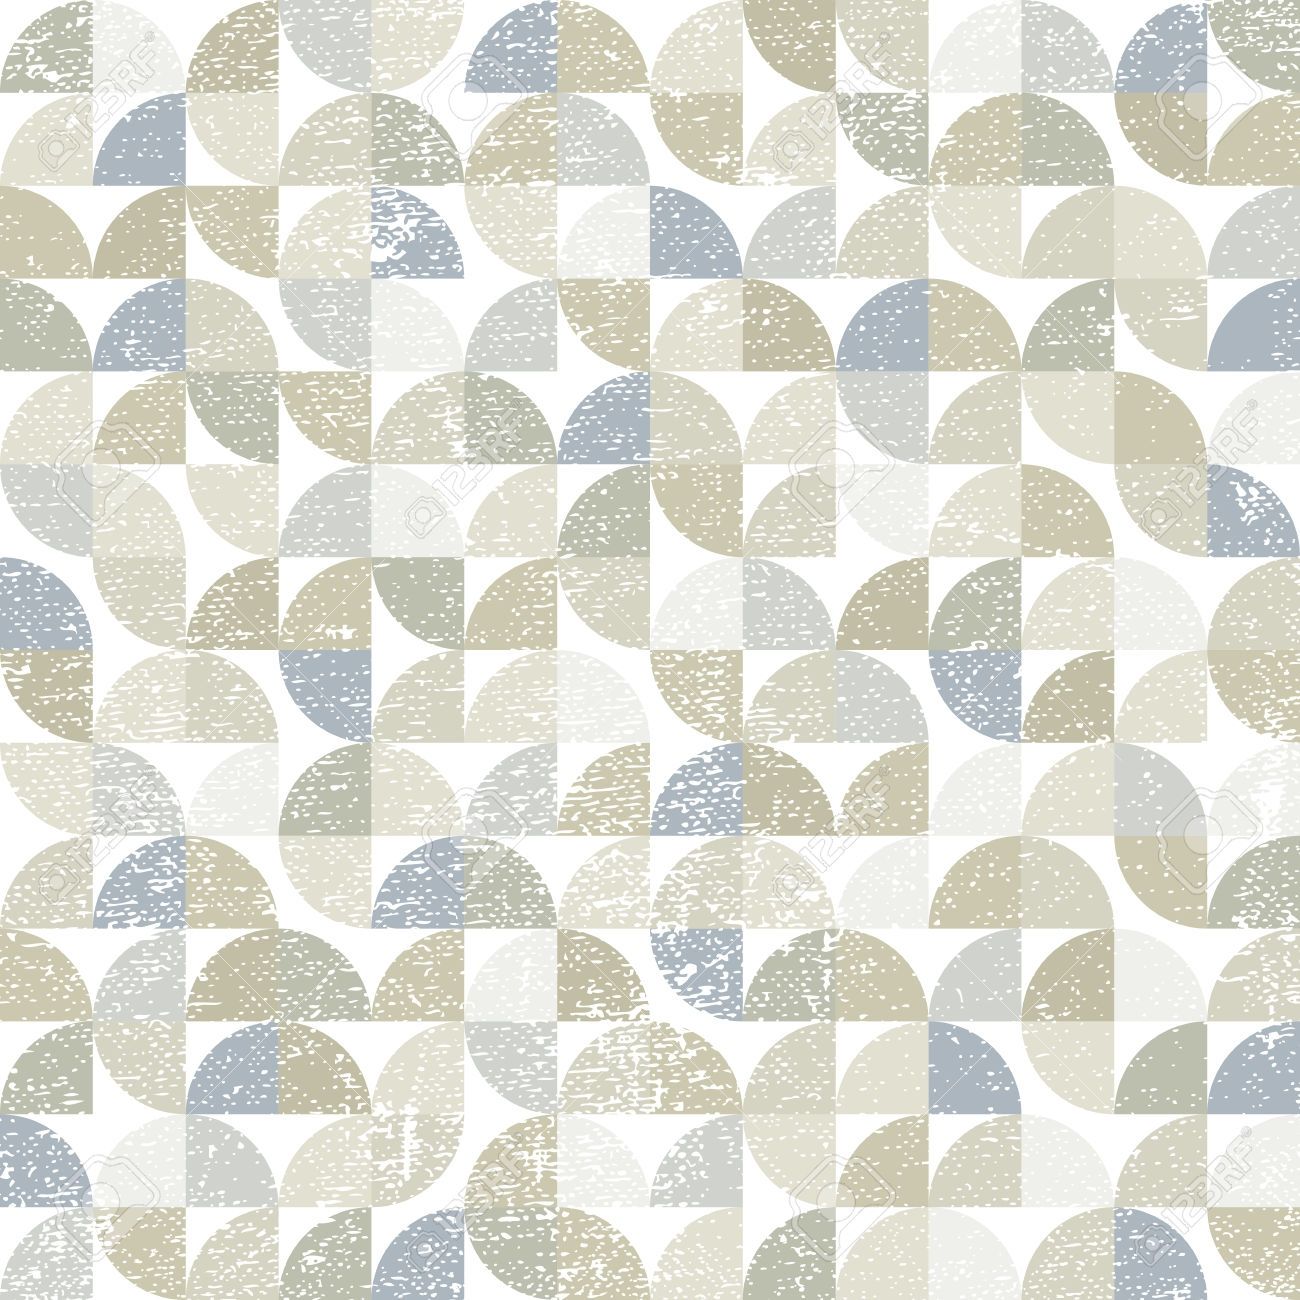 Modern Carpet Pattern Seamless Carpet Awsa Regarding Geometric Carpet Patterns (View 5 of 15)